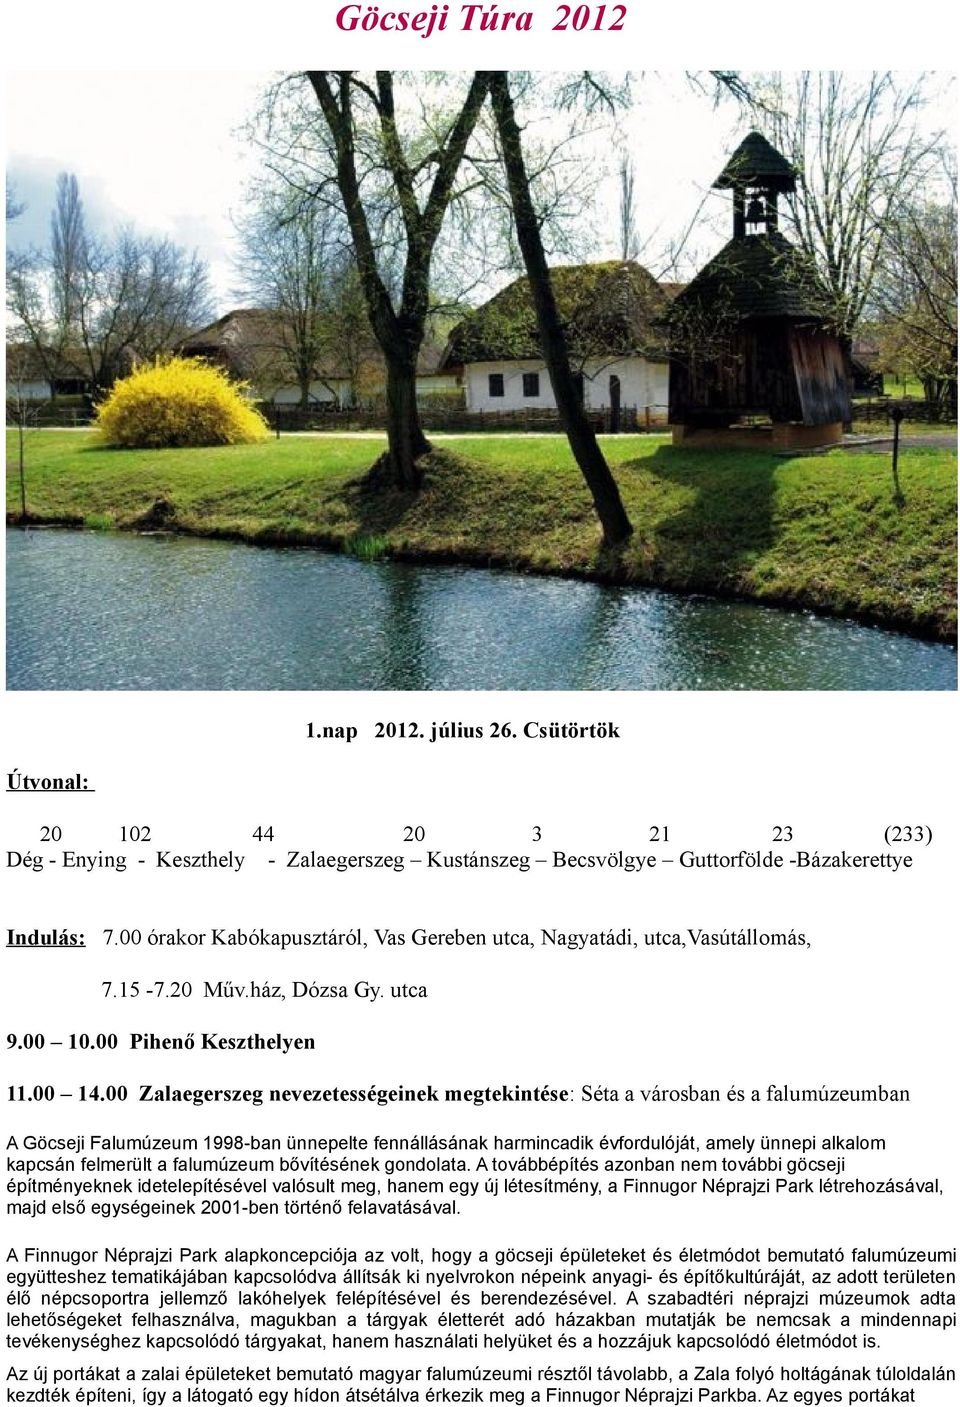 00 Zalaegerszeg nevezetességeinek megtekintése: Séta a városban és a falumúzeumban A Göcseji Falumúzeum 1998-ban ünnepelte fennállásának harmincadik évfordulóját, amely ünnepi alkalom kapcsán